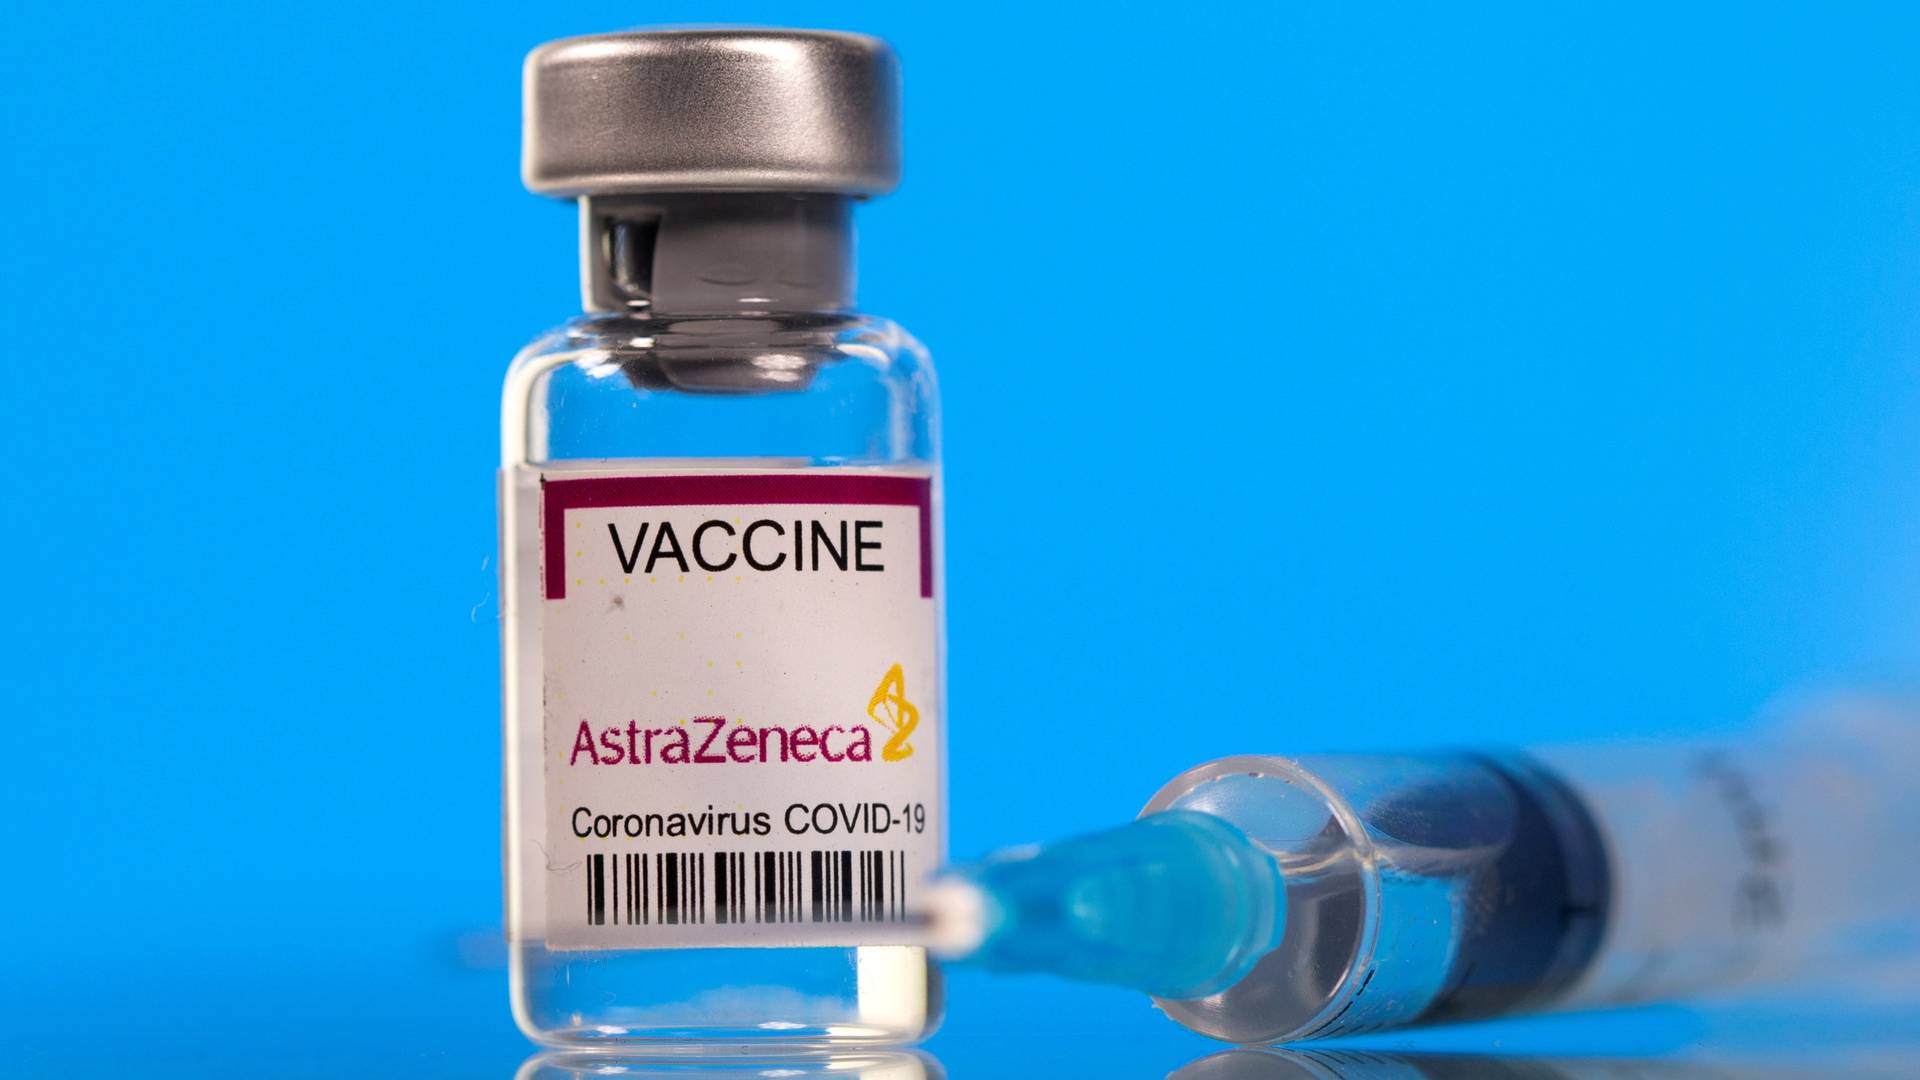 法國宣佈今後將阿斯利康新冠疫苗全部用於捐贈